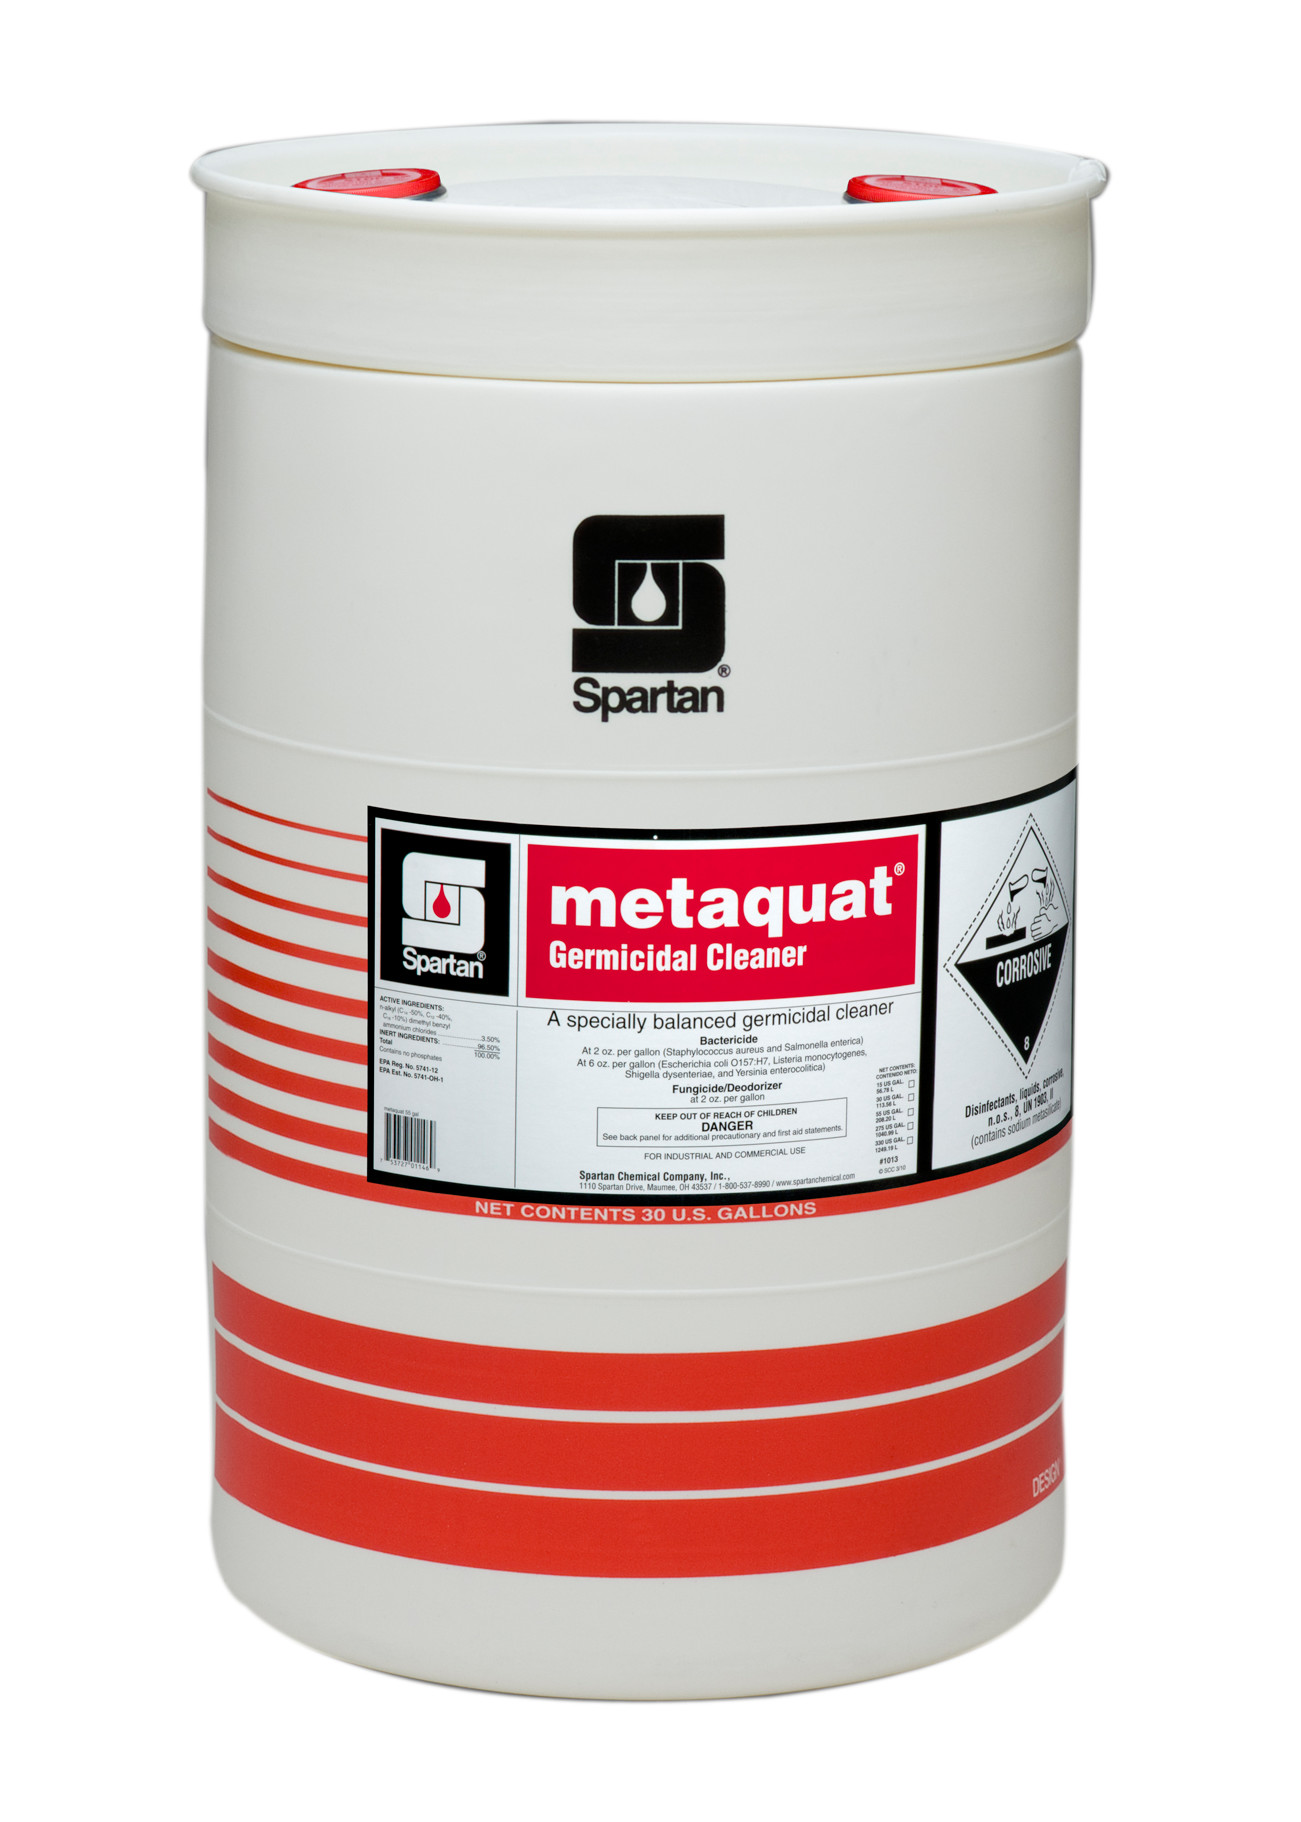 Spartan Chemical Company metaquat, 30 GAL DRUM